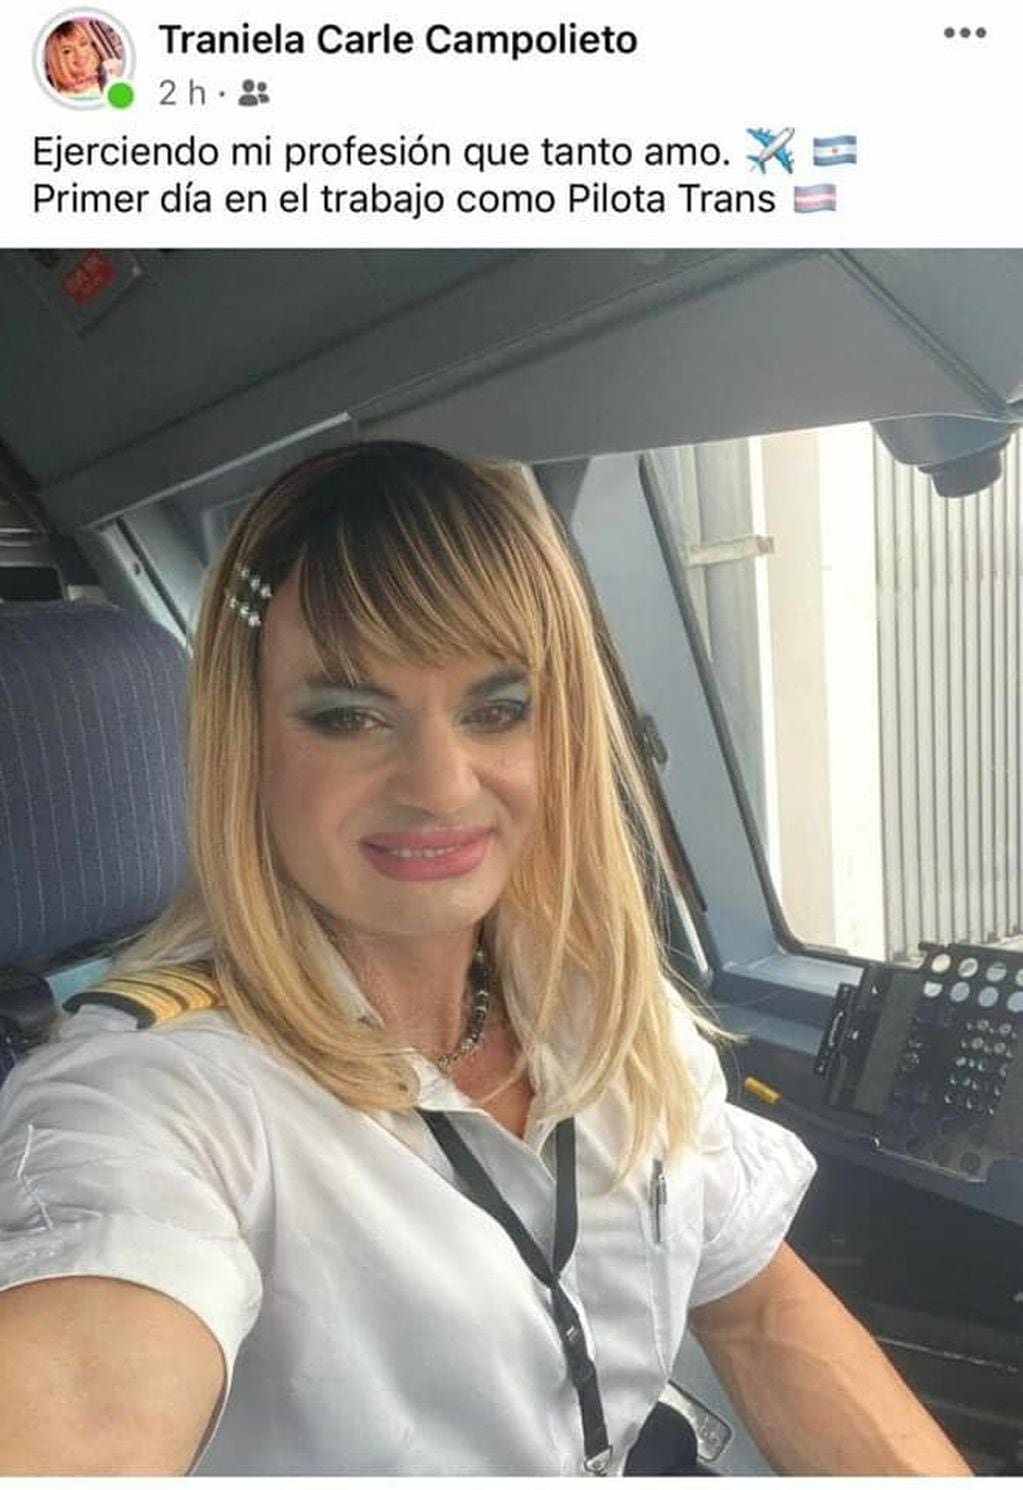 Posteo de la piloto en su cuenta de Facebook, donde celebró con los internautas su primer vuelo como mujer trans. Foto: Traniela Carle Campolieto